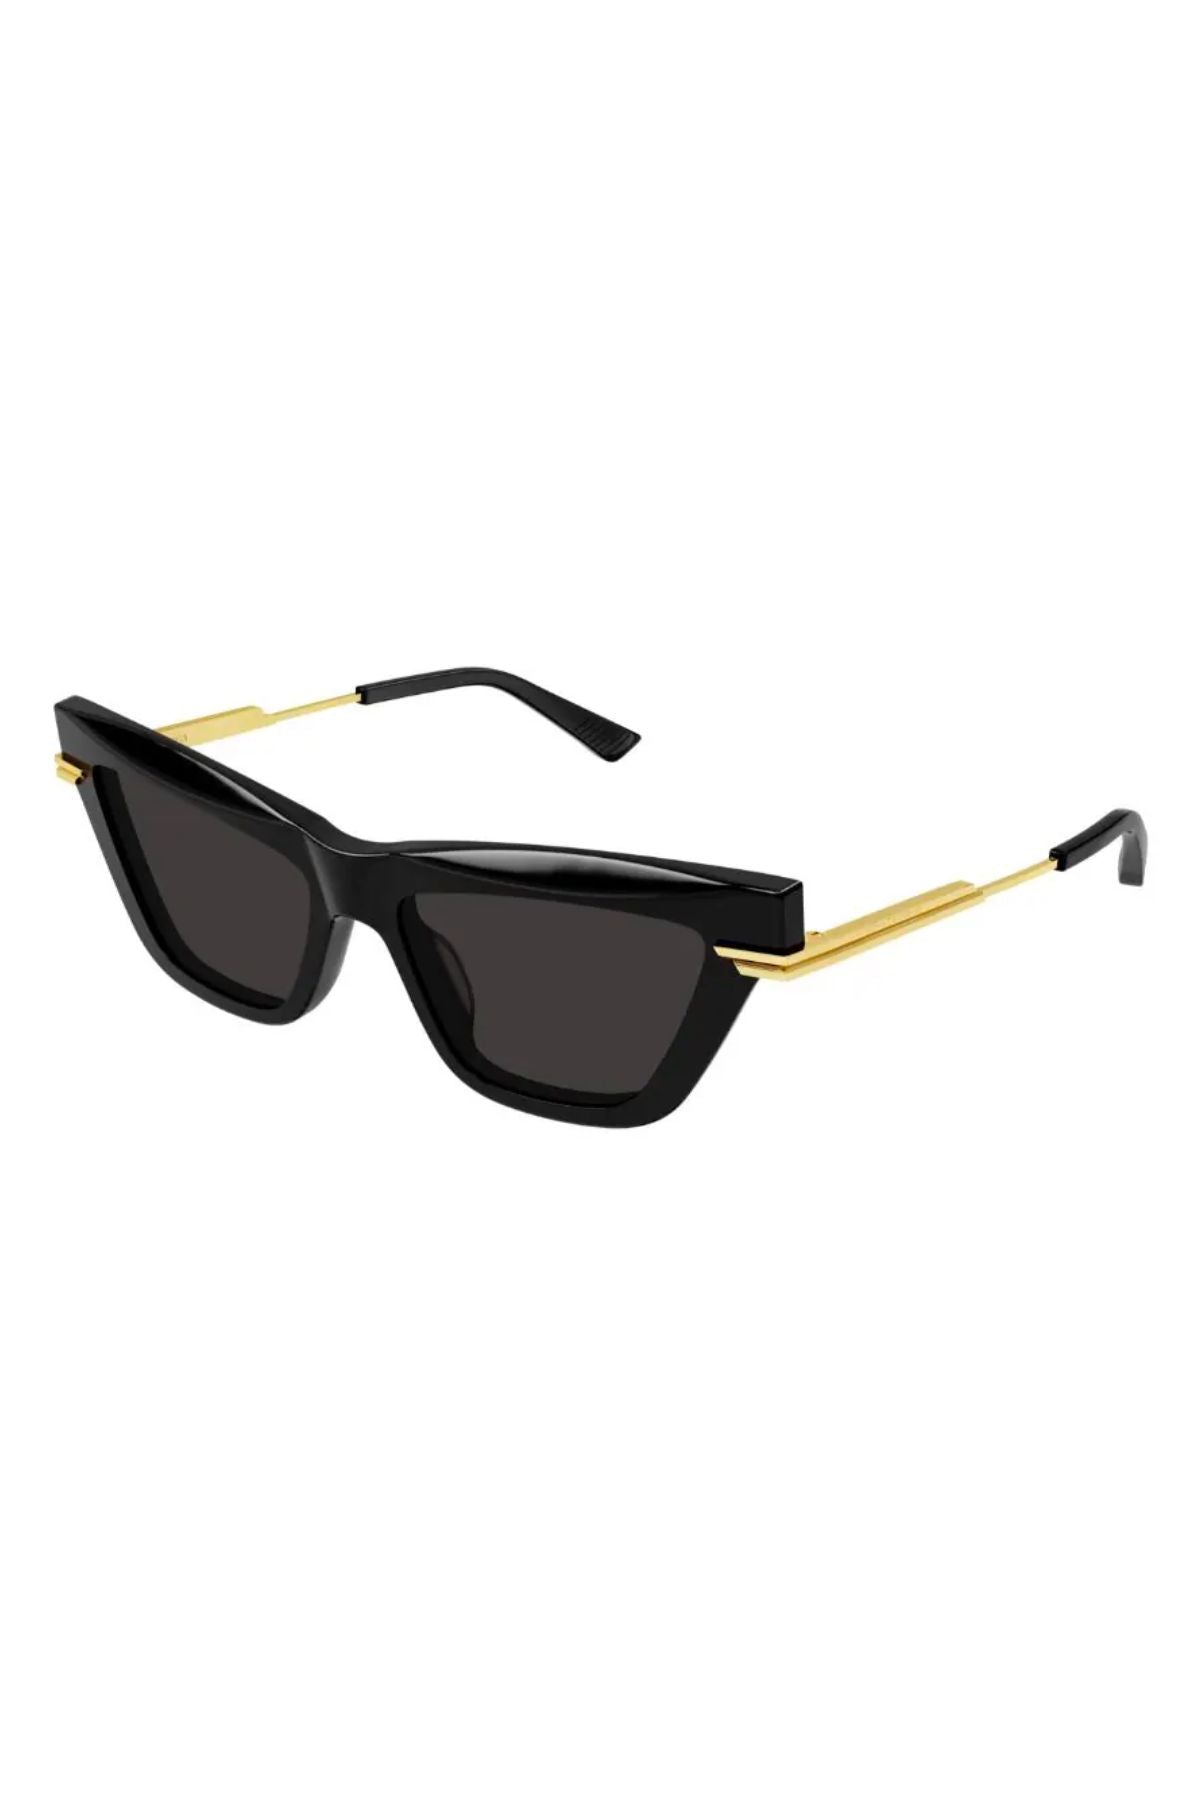 Bottega Veneta Oversized Cat Eye Sunglasses - Black